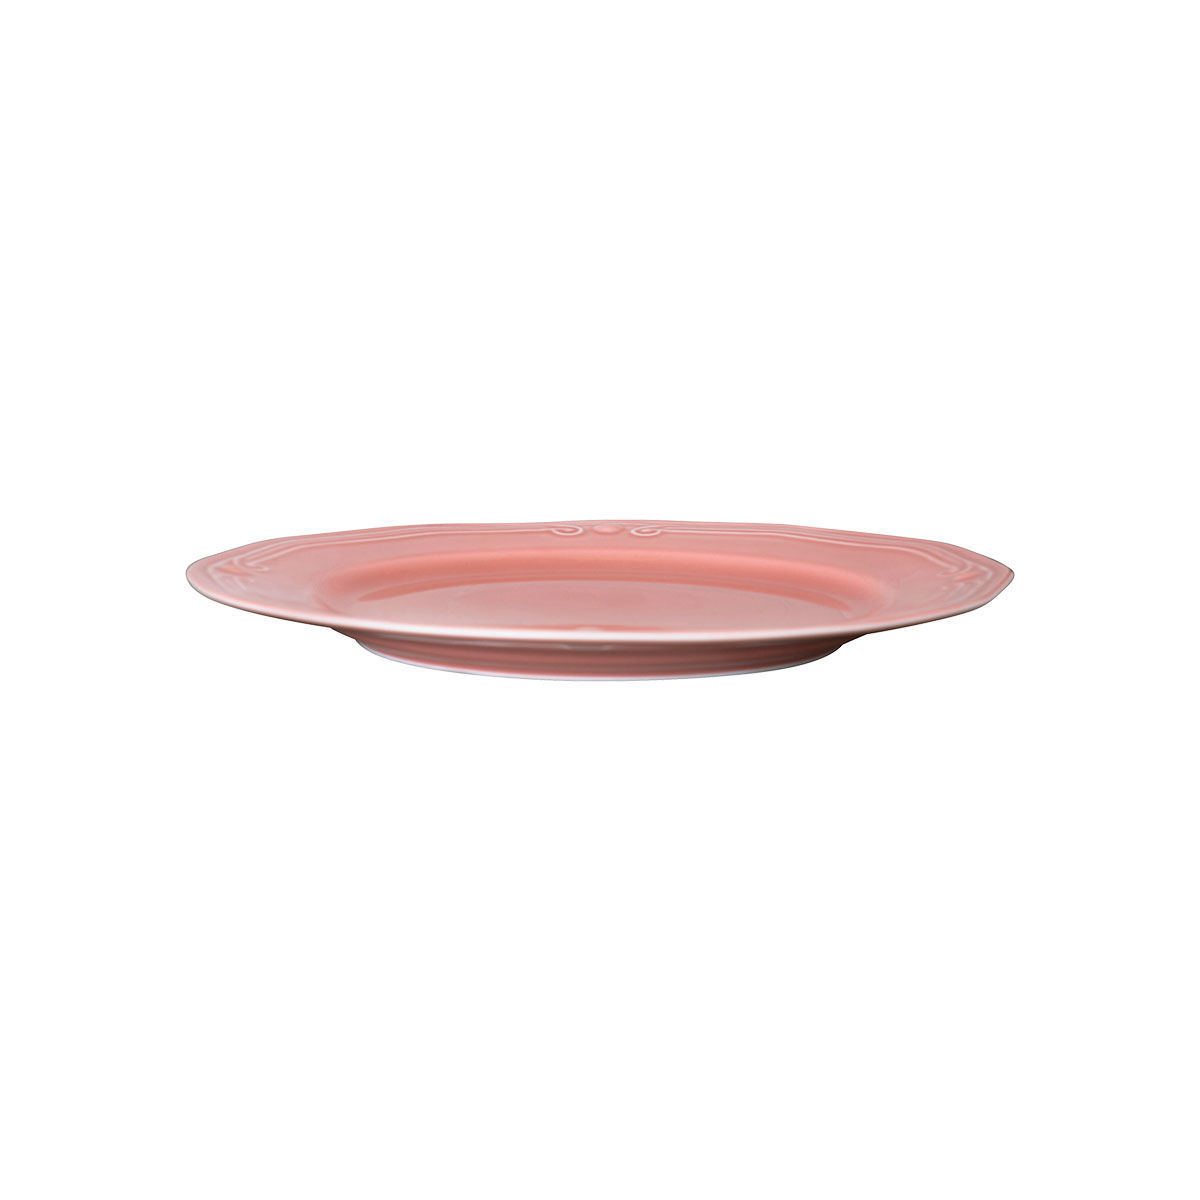 Πιάτο Ρηχό Πορσελάνης Ανάγλυφο Ροζ Φ20cm Athénée Estia 01-13554 - 1